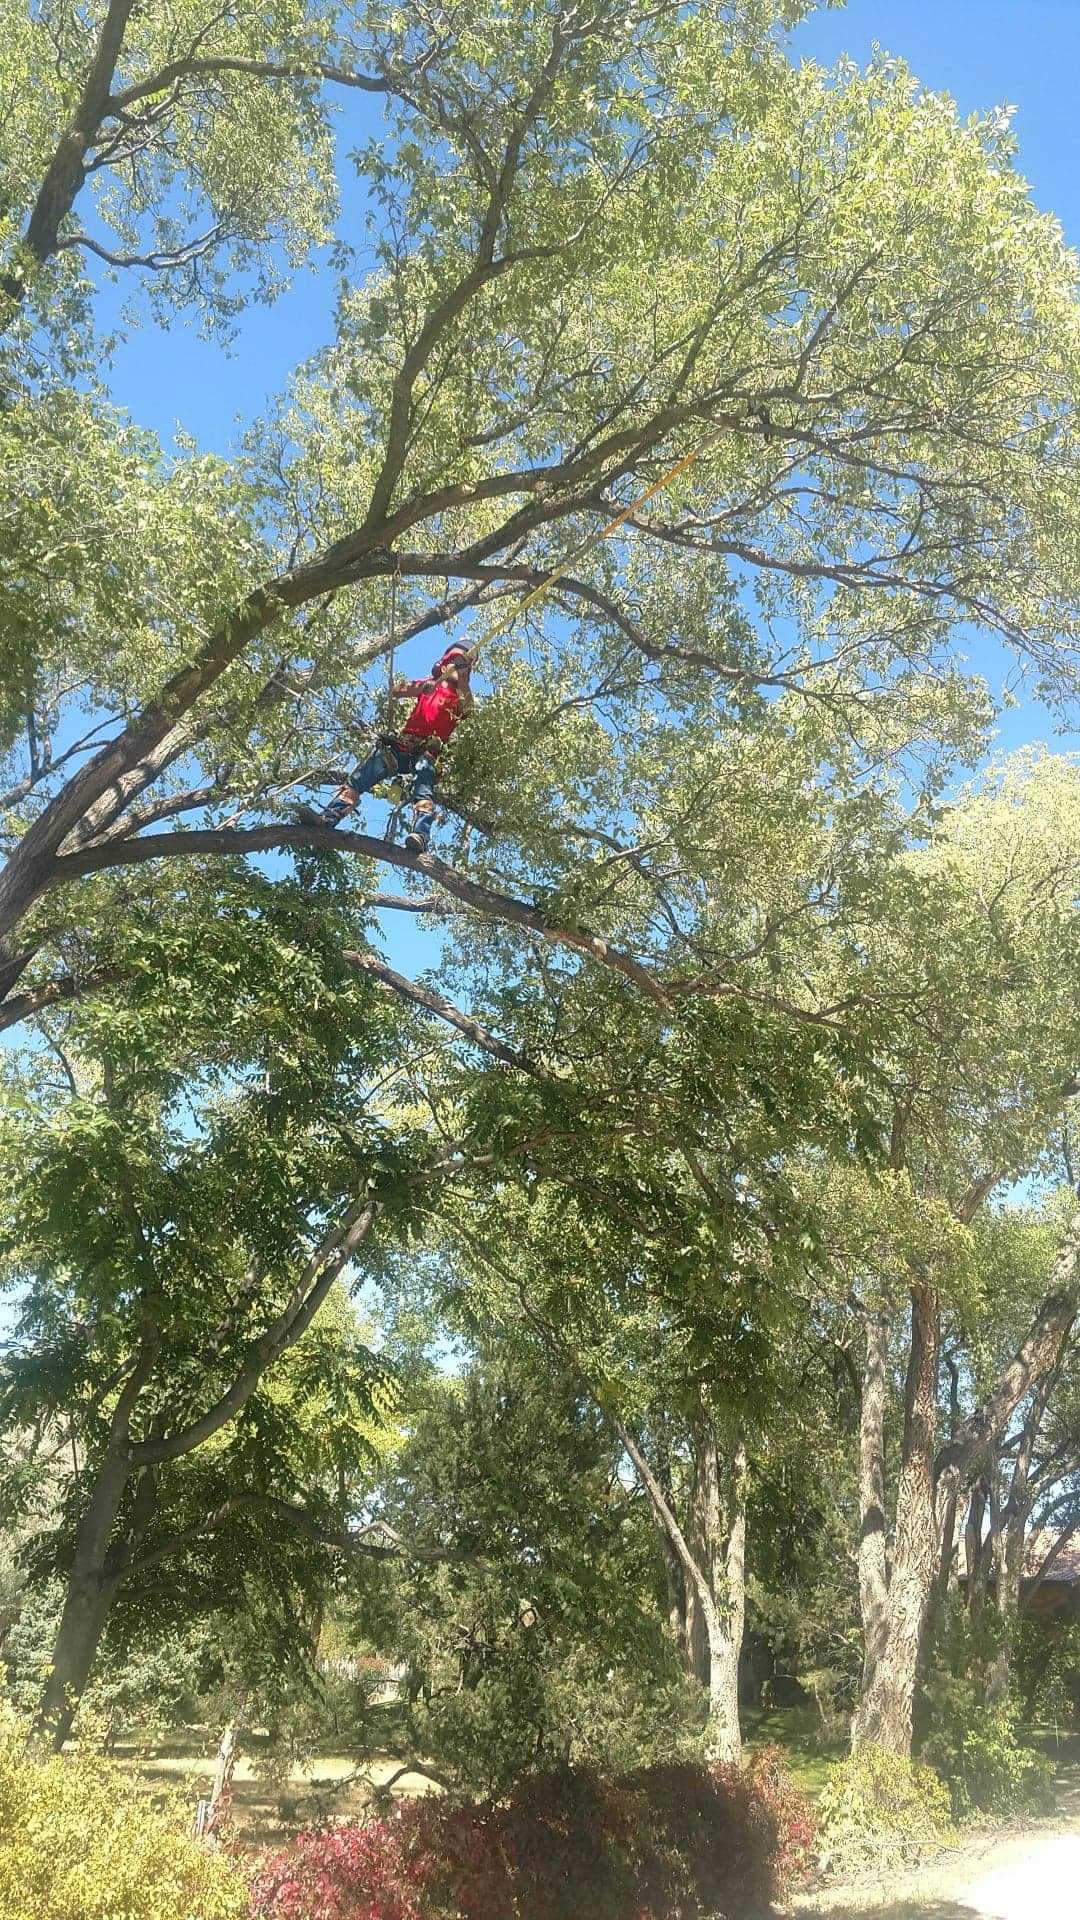 Man In Tree